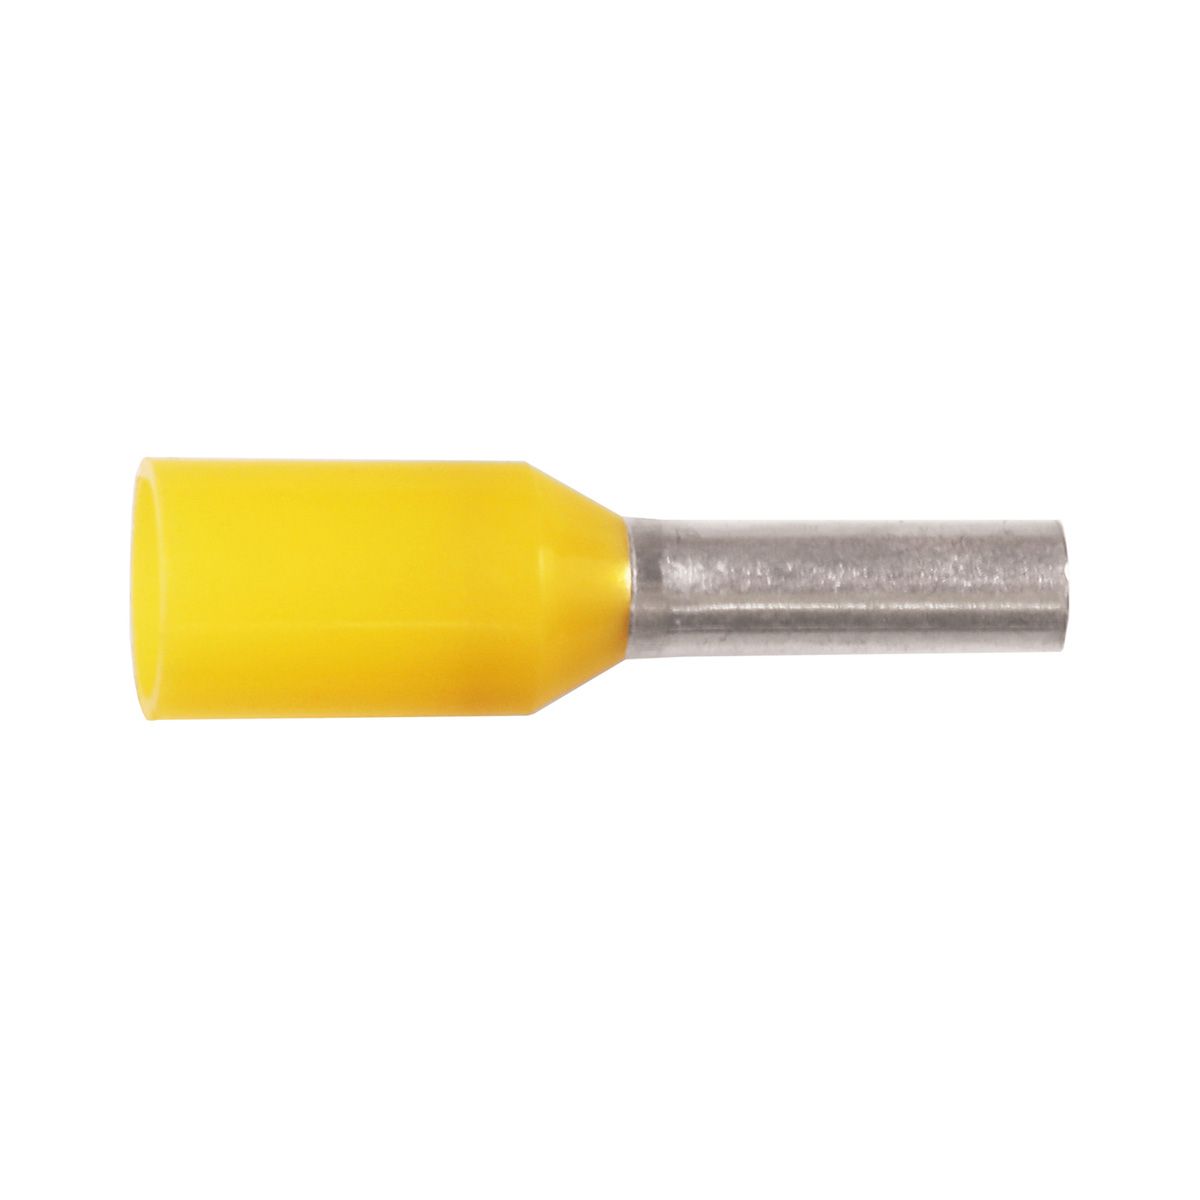 KA1-12ETW Ізольований гільзовий накінечник 1 мм² / L1=12 мм / жовтий / упак. 500 шт